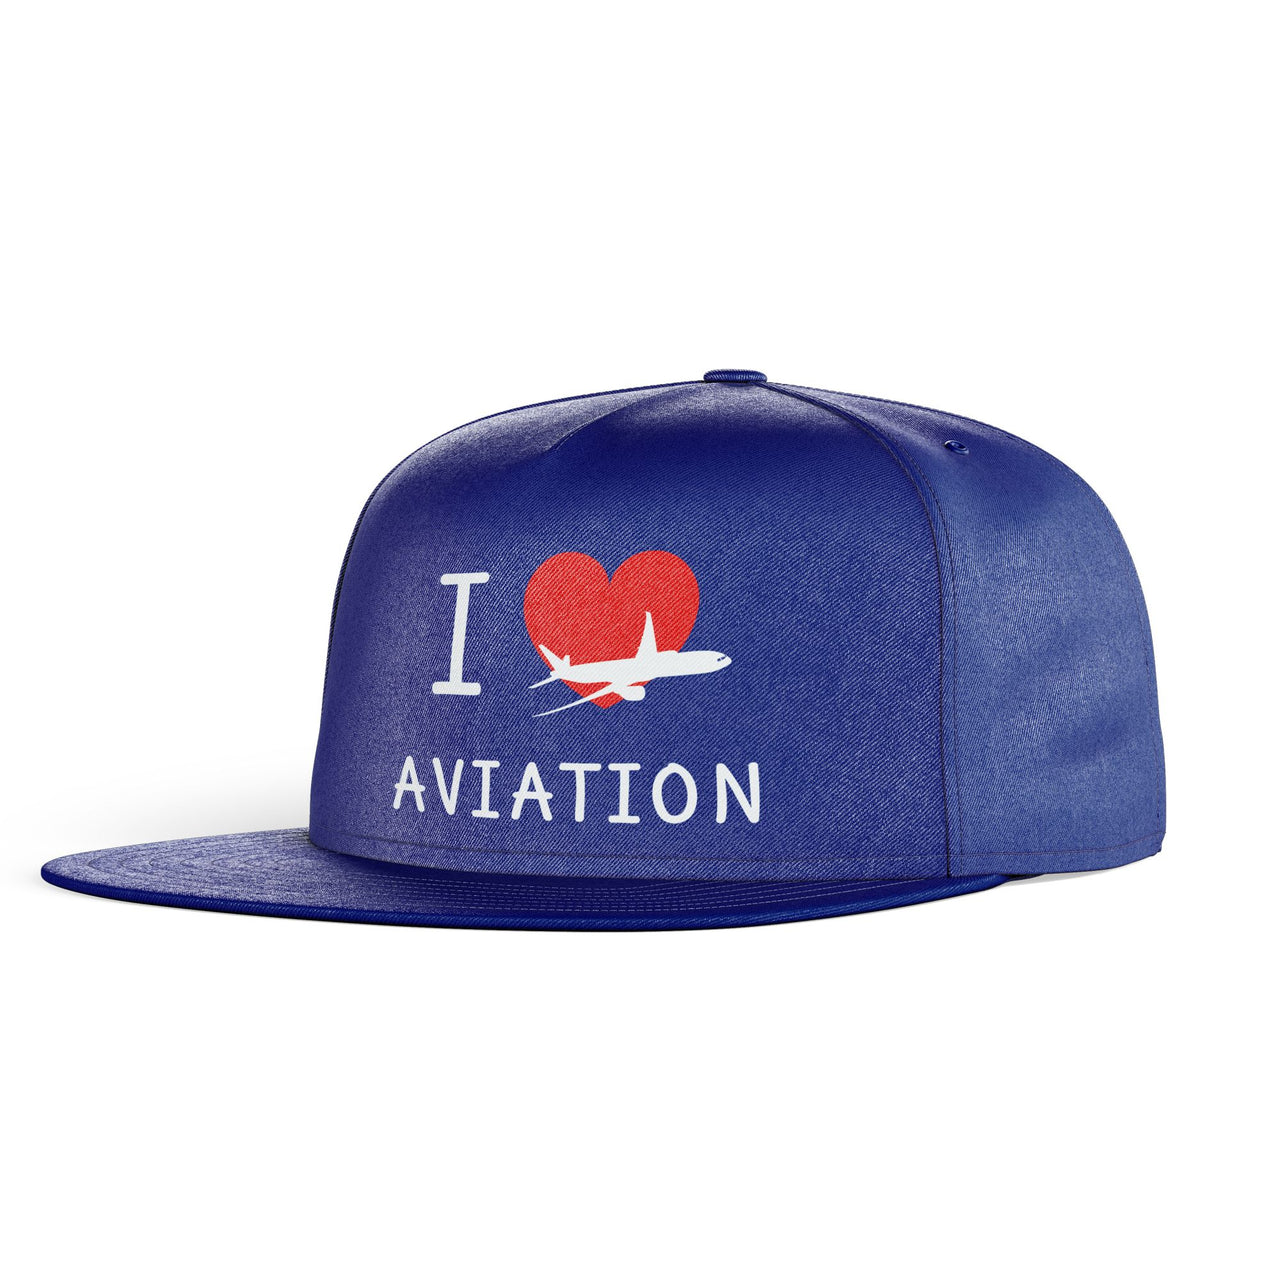 I Love Aviation Designed Snapback Caps & Hats